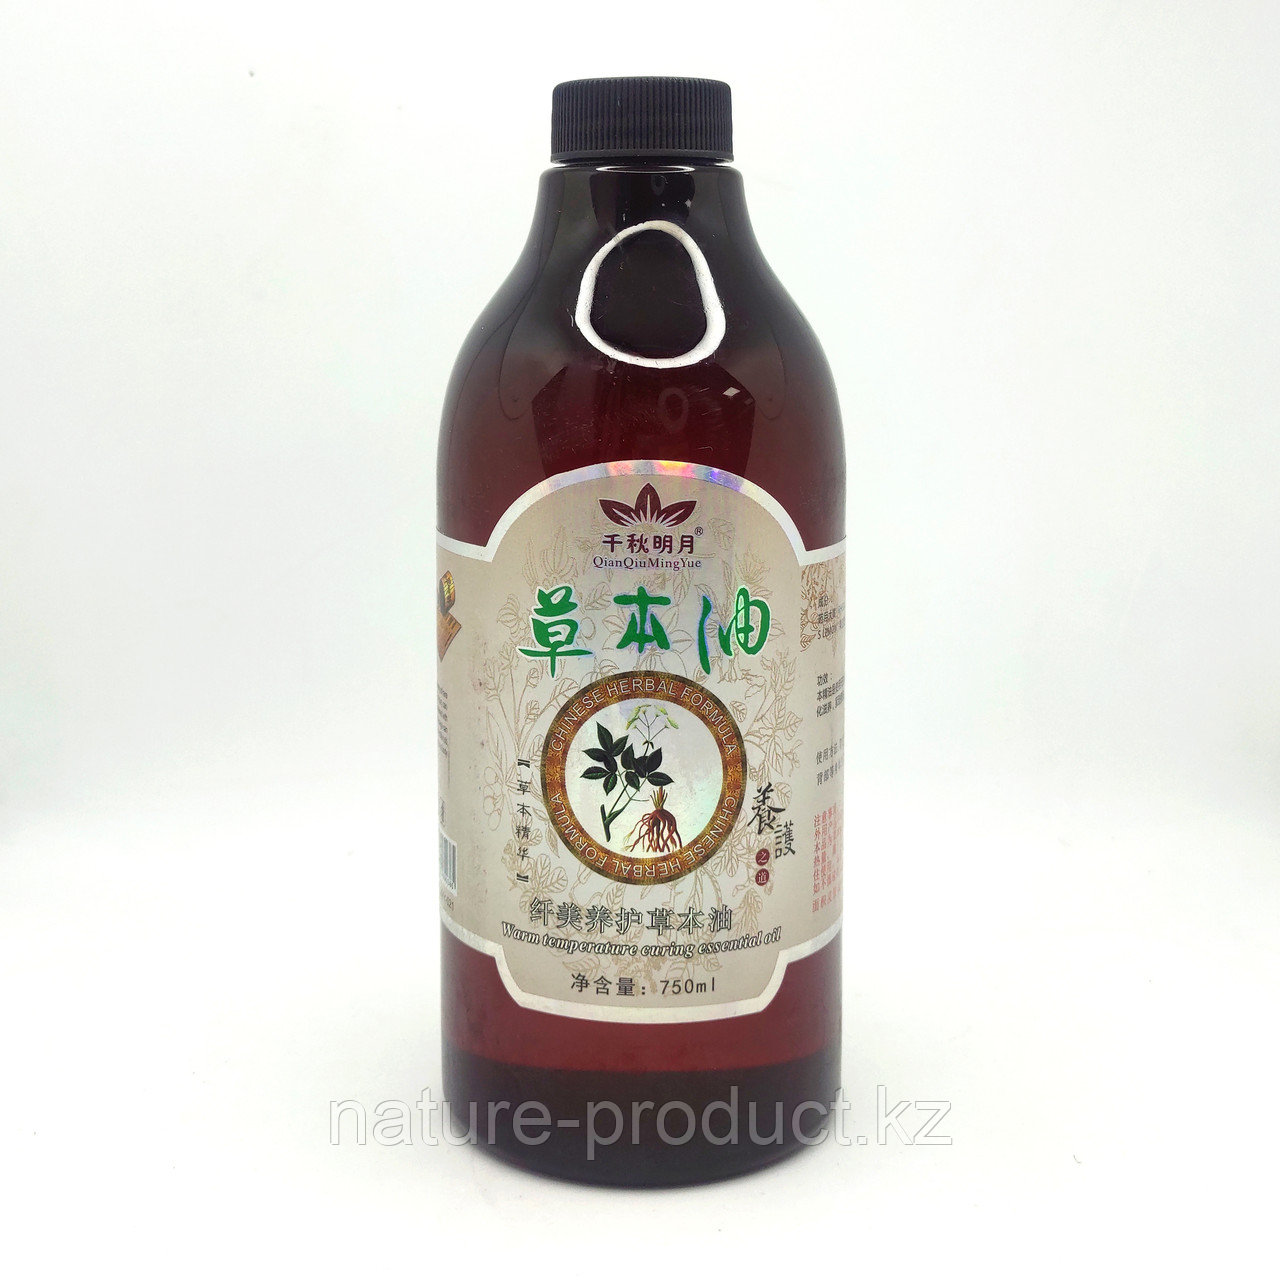 Масло массажное травяное согревающее Qian Qiu Ming Yue 750 ml